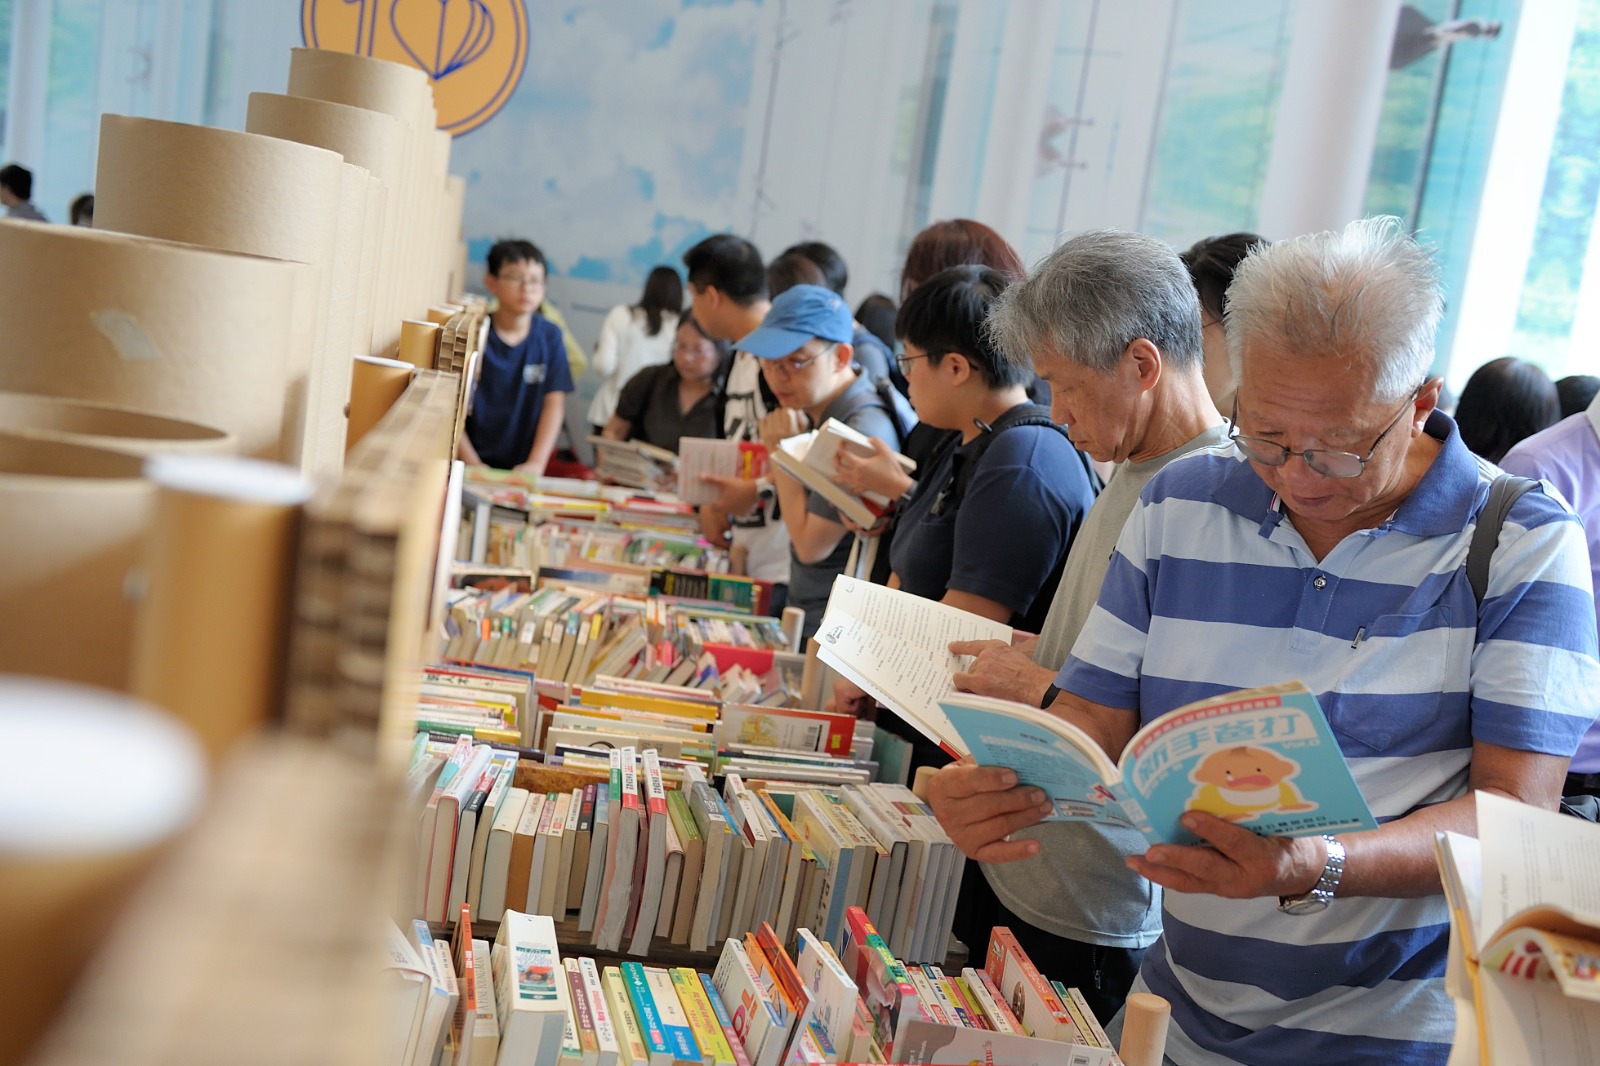 今年太古地產的「書出愛心 十元義賣」將延期於6月25日至7月3日在太古坊舉行。